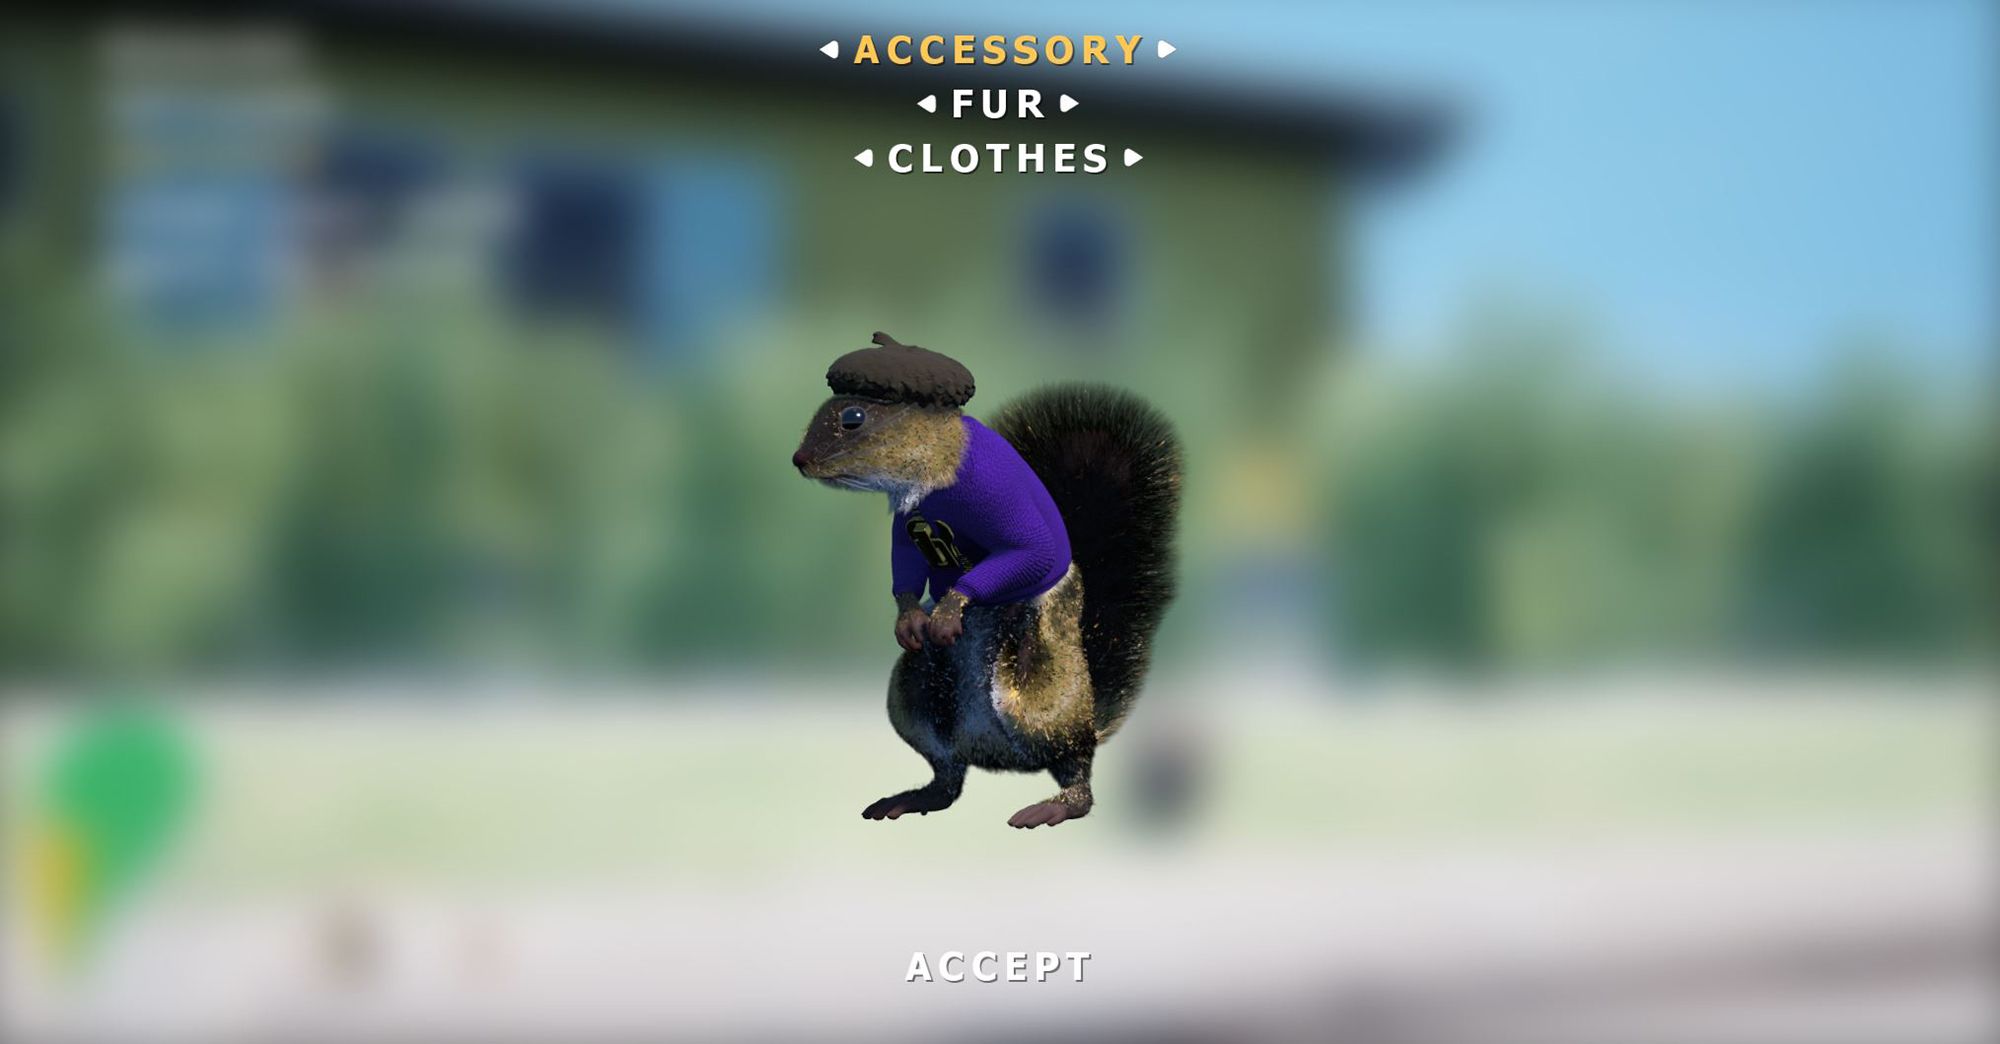 squirrel gun menu fir clothes accessories